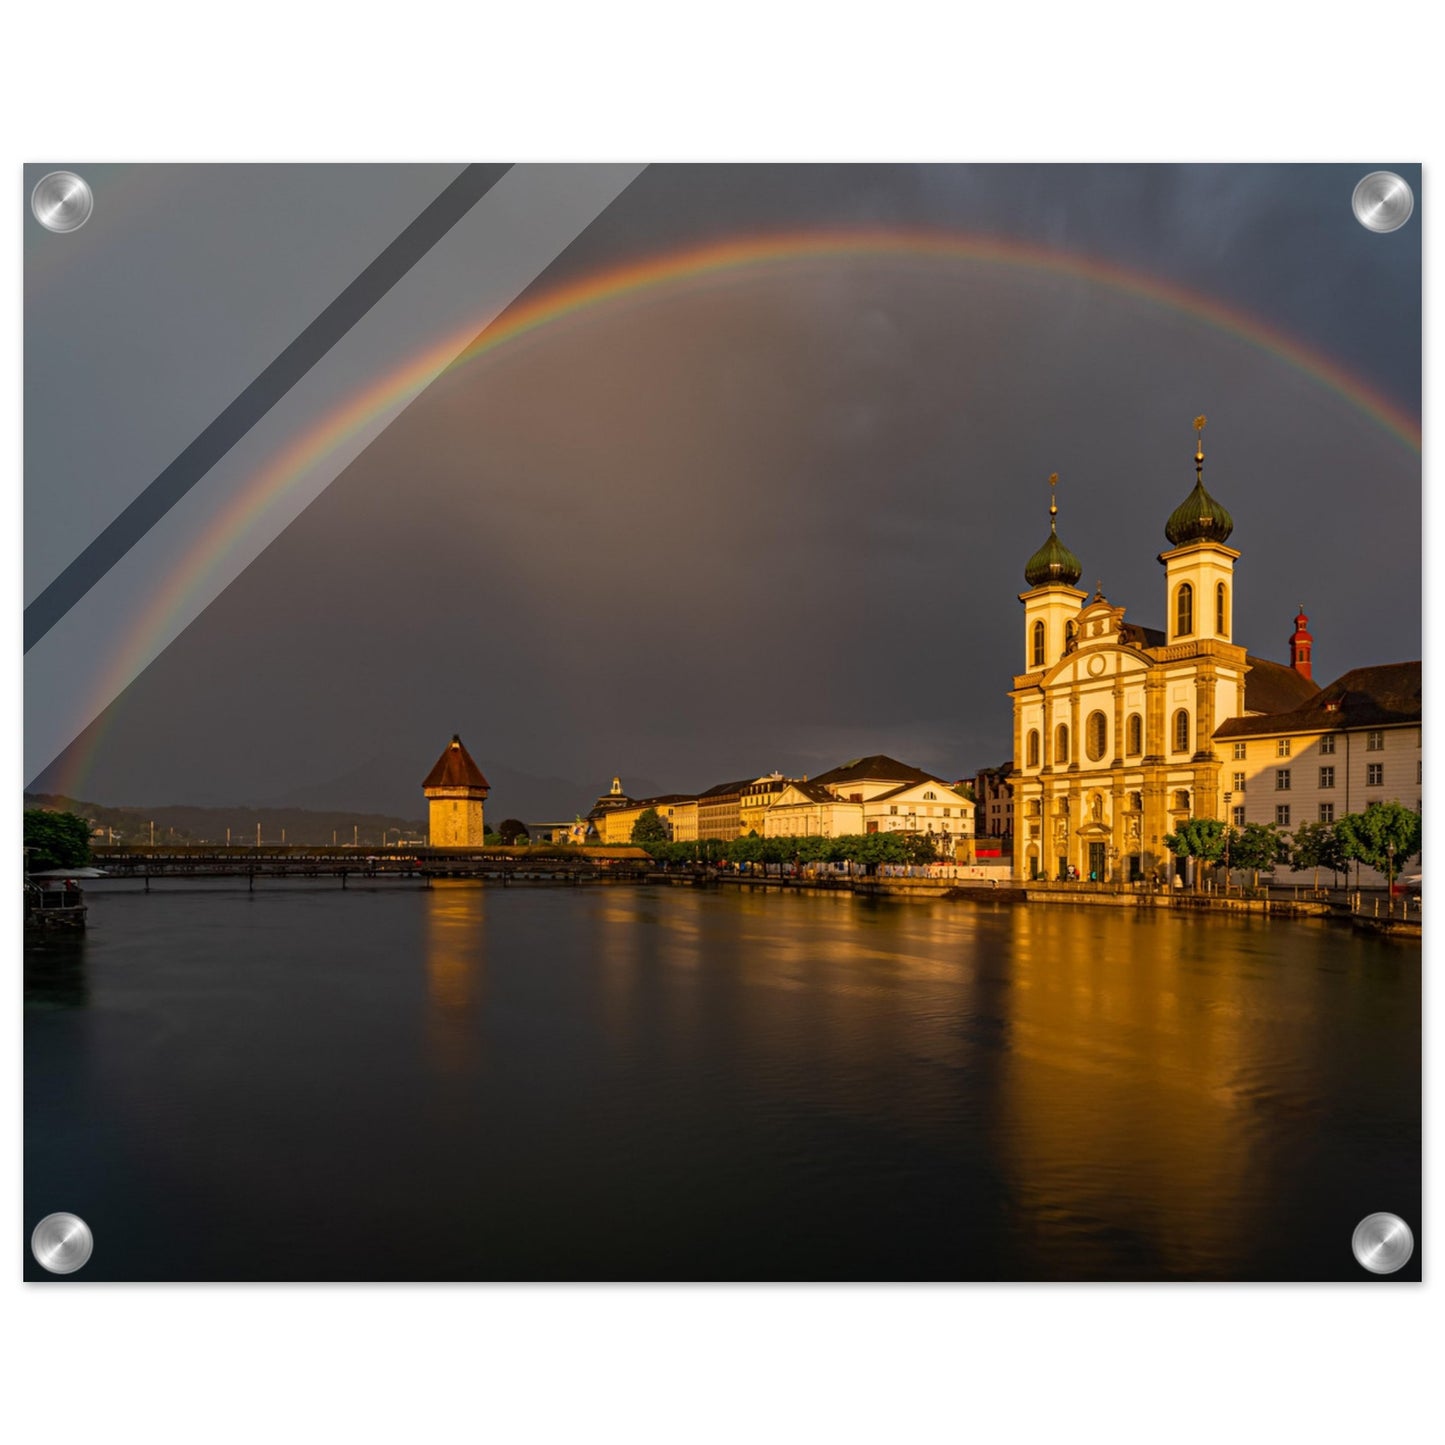 Regenbogen Luzern- Acryldruck